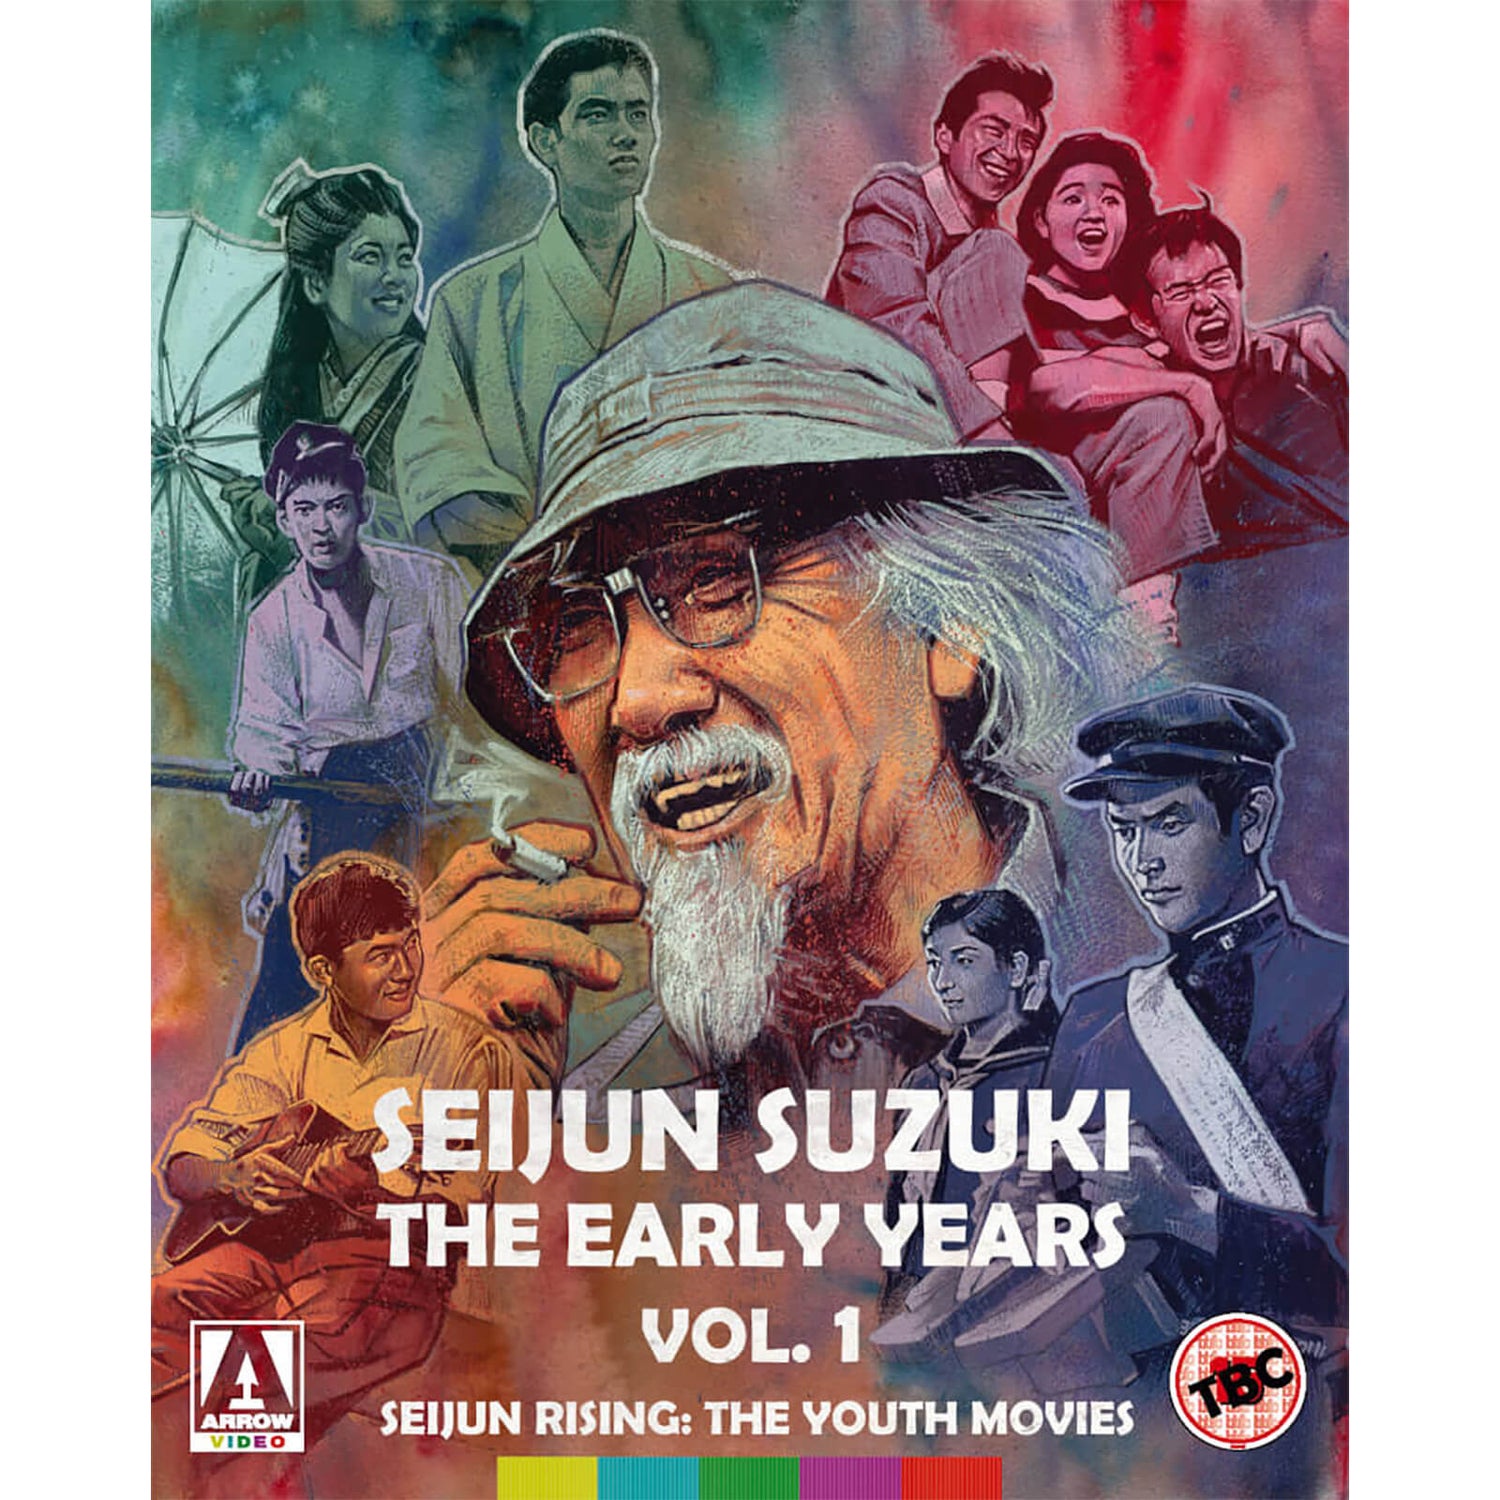 Seijun Suzuki: The Early Years. Vol. 1 - Seijun Rising: The Youth Movies